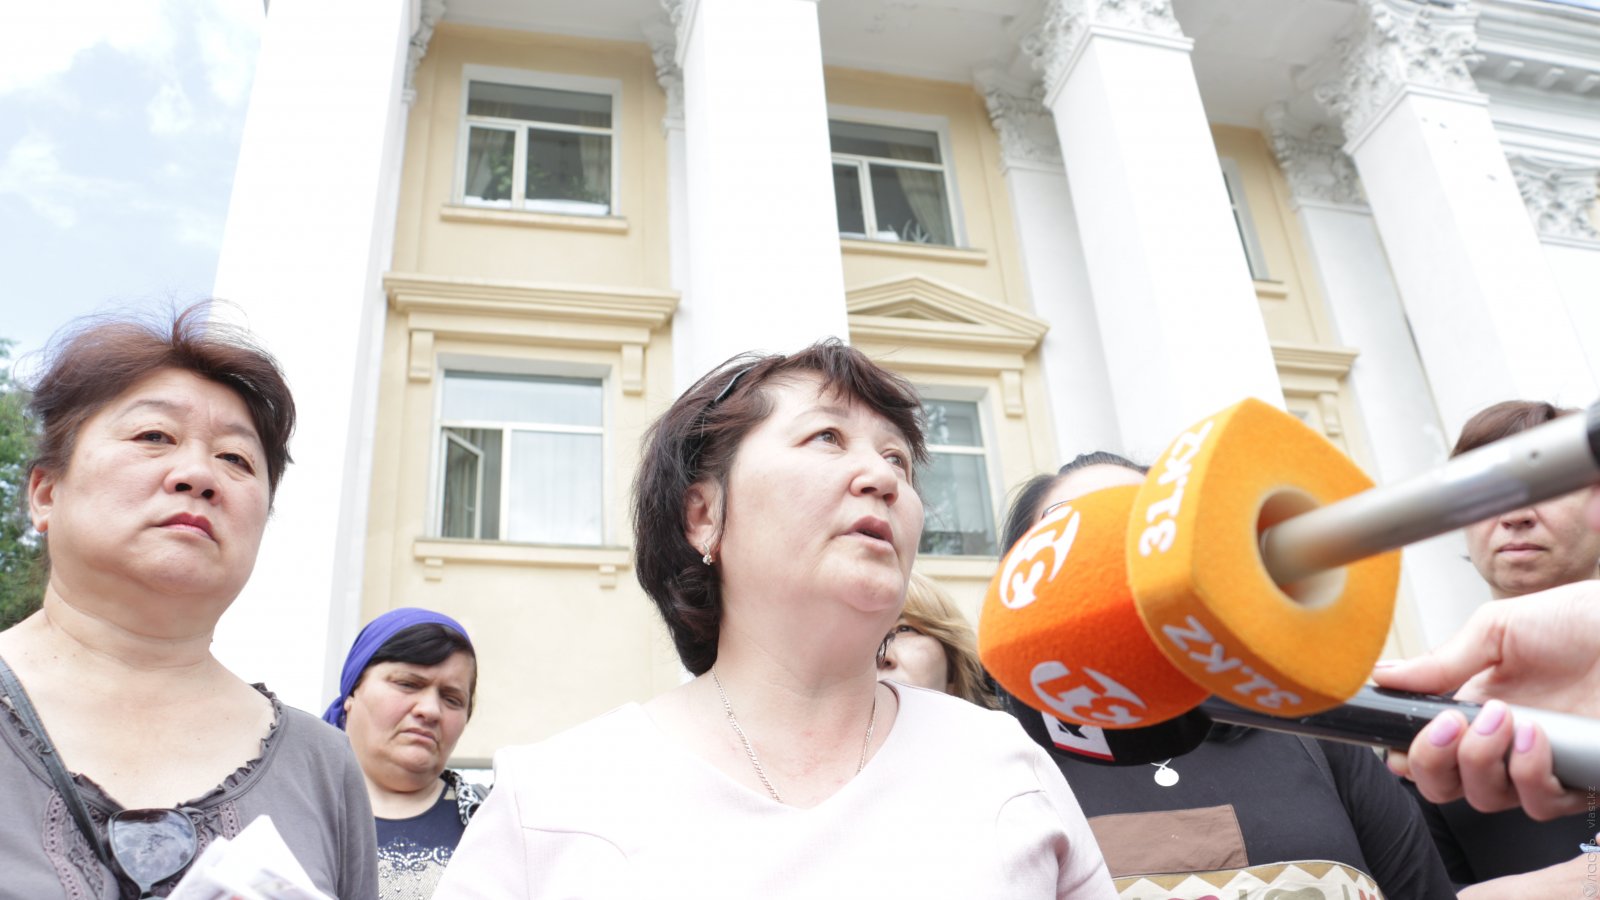 Цветочницы Алматы: «Два года люди в страшной депрессии»